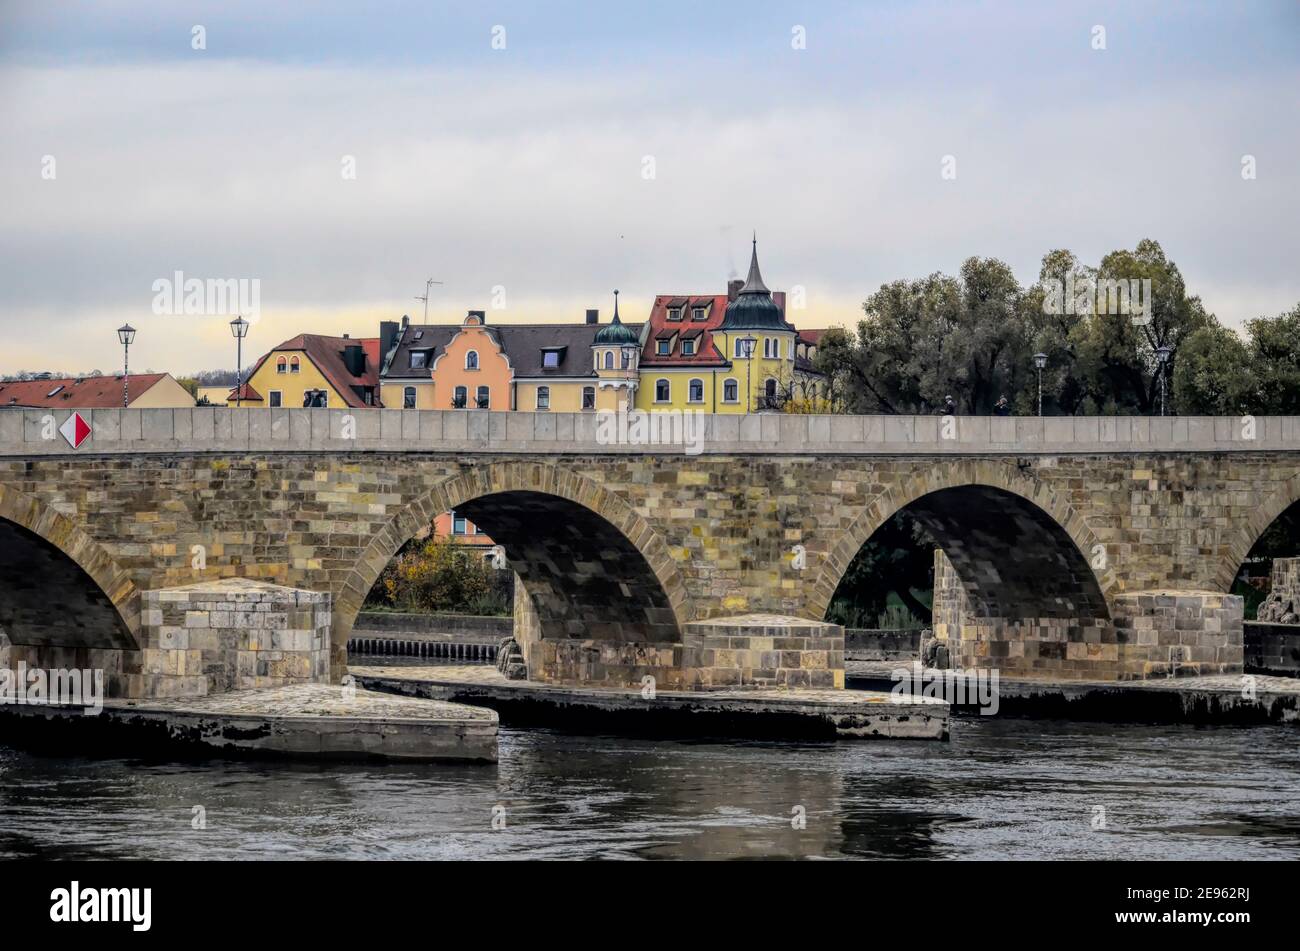 Regensburg, città bavarese sul Danubio, nel sud-est della Germania, è famosa per il suo nucleo medievale ben conservato. Foto Stock